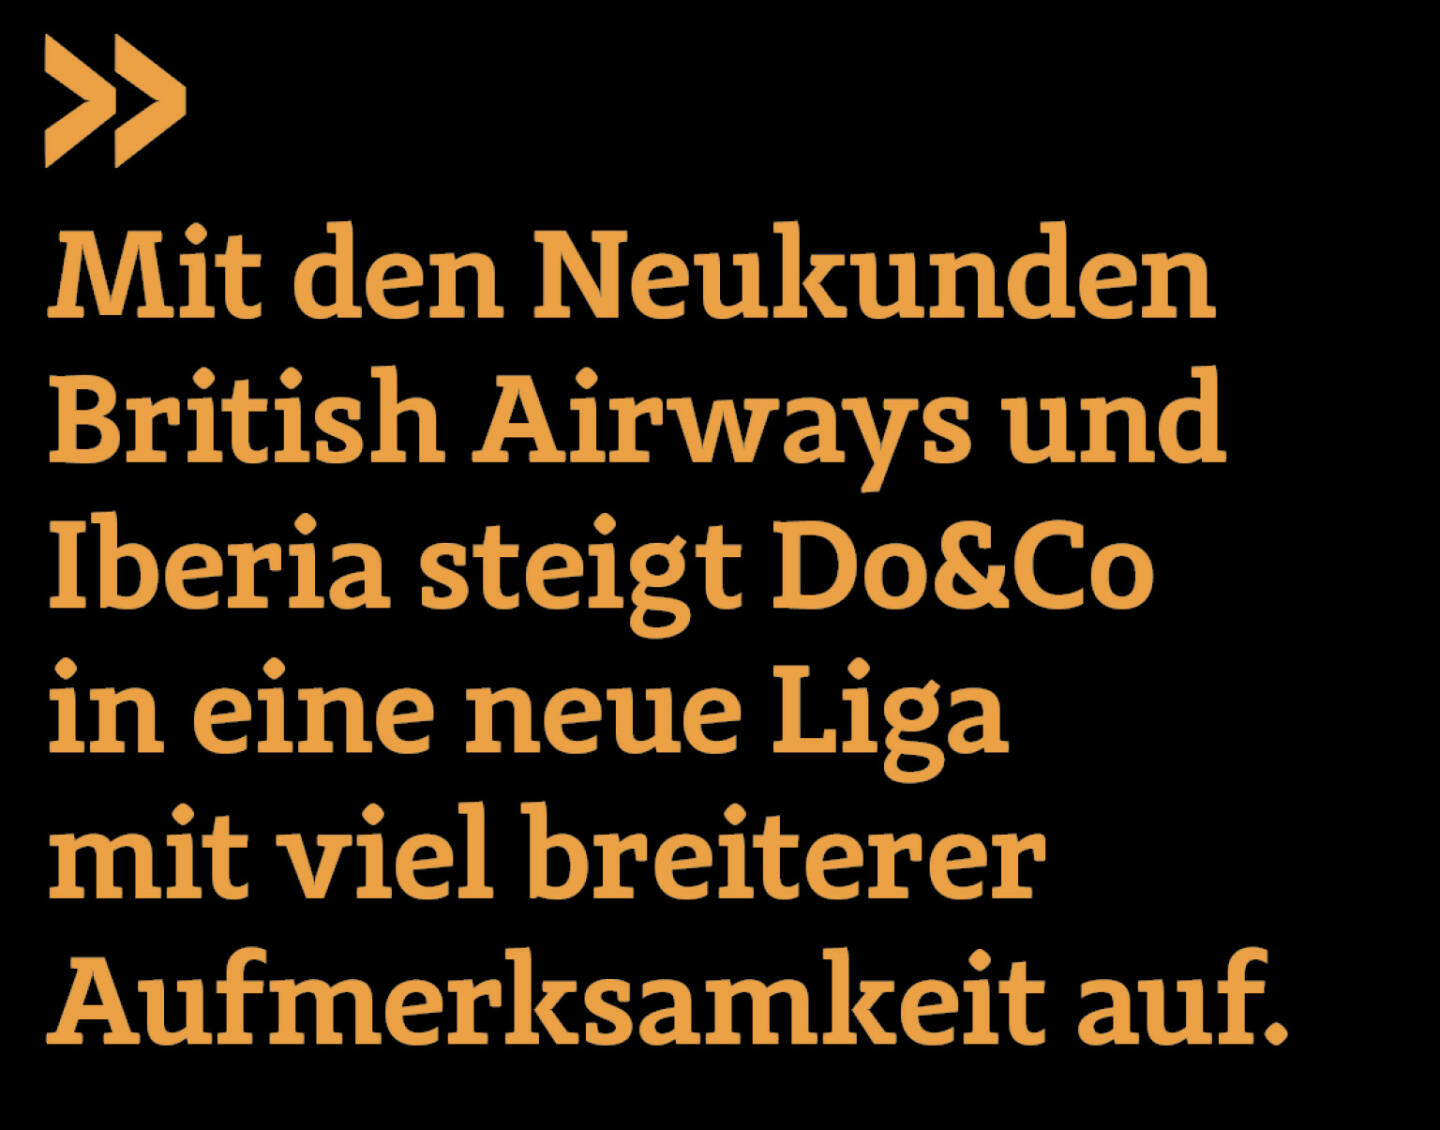 Mit den Neukunden British Airways und Iberia steigt Do&Co in eine neue Liga mit viel breiterer Aufmerksamkeit auf. 
Christian Drastil